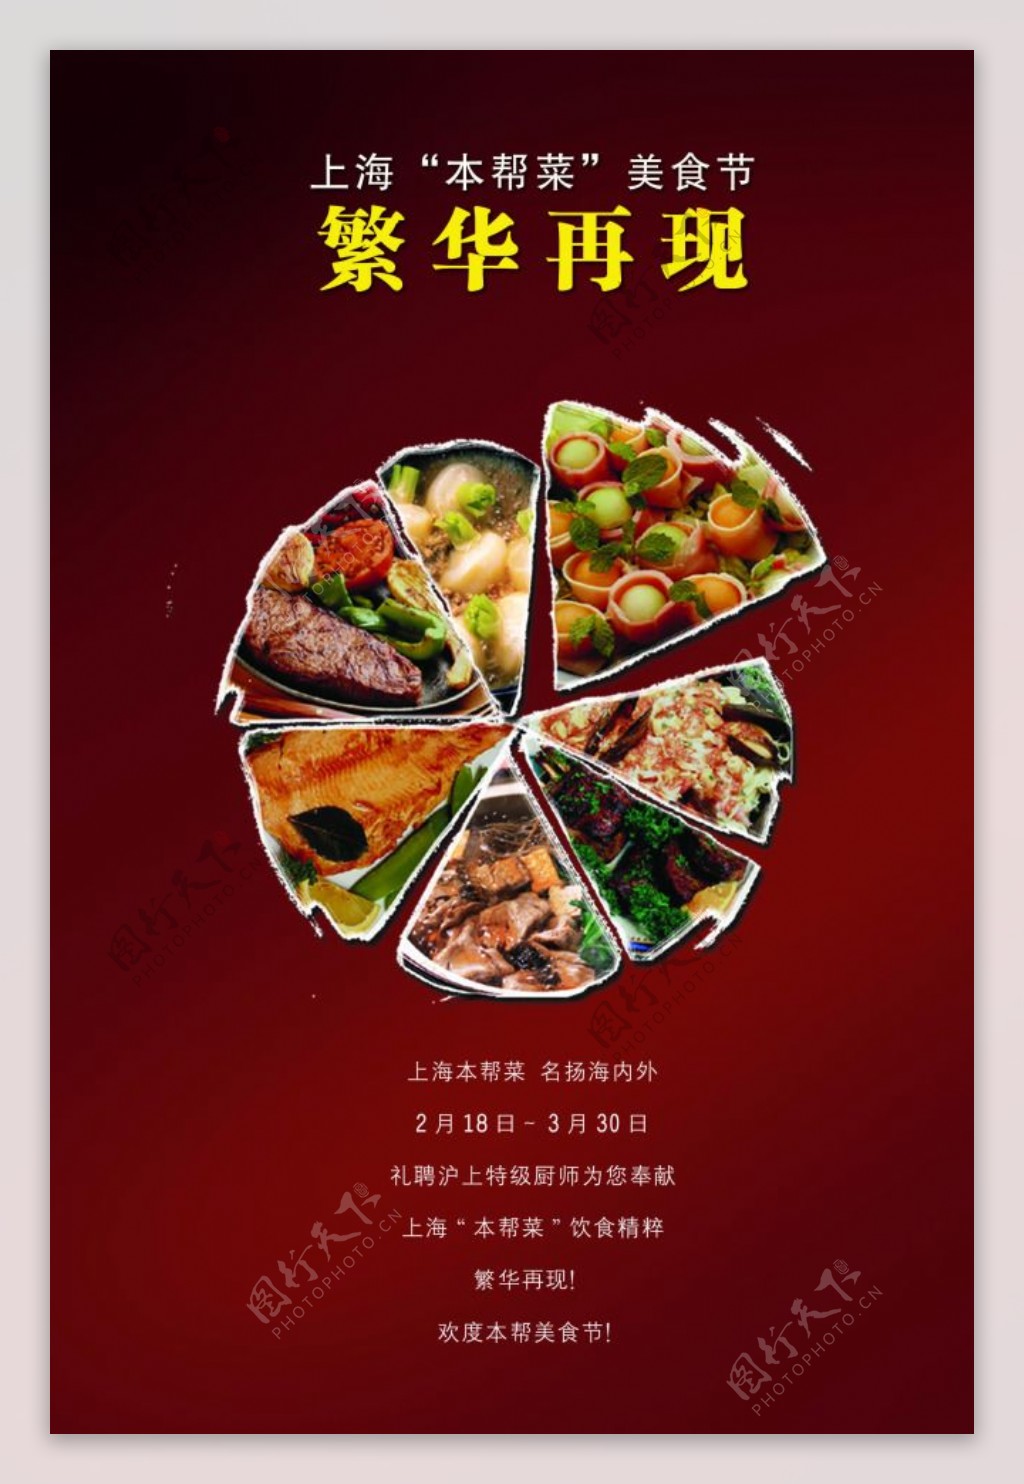 上海菜美食节psd分层素材